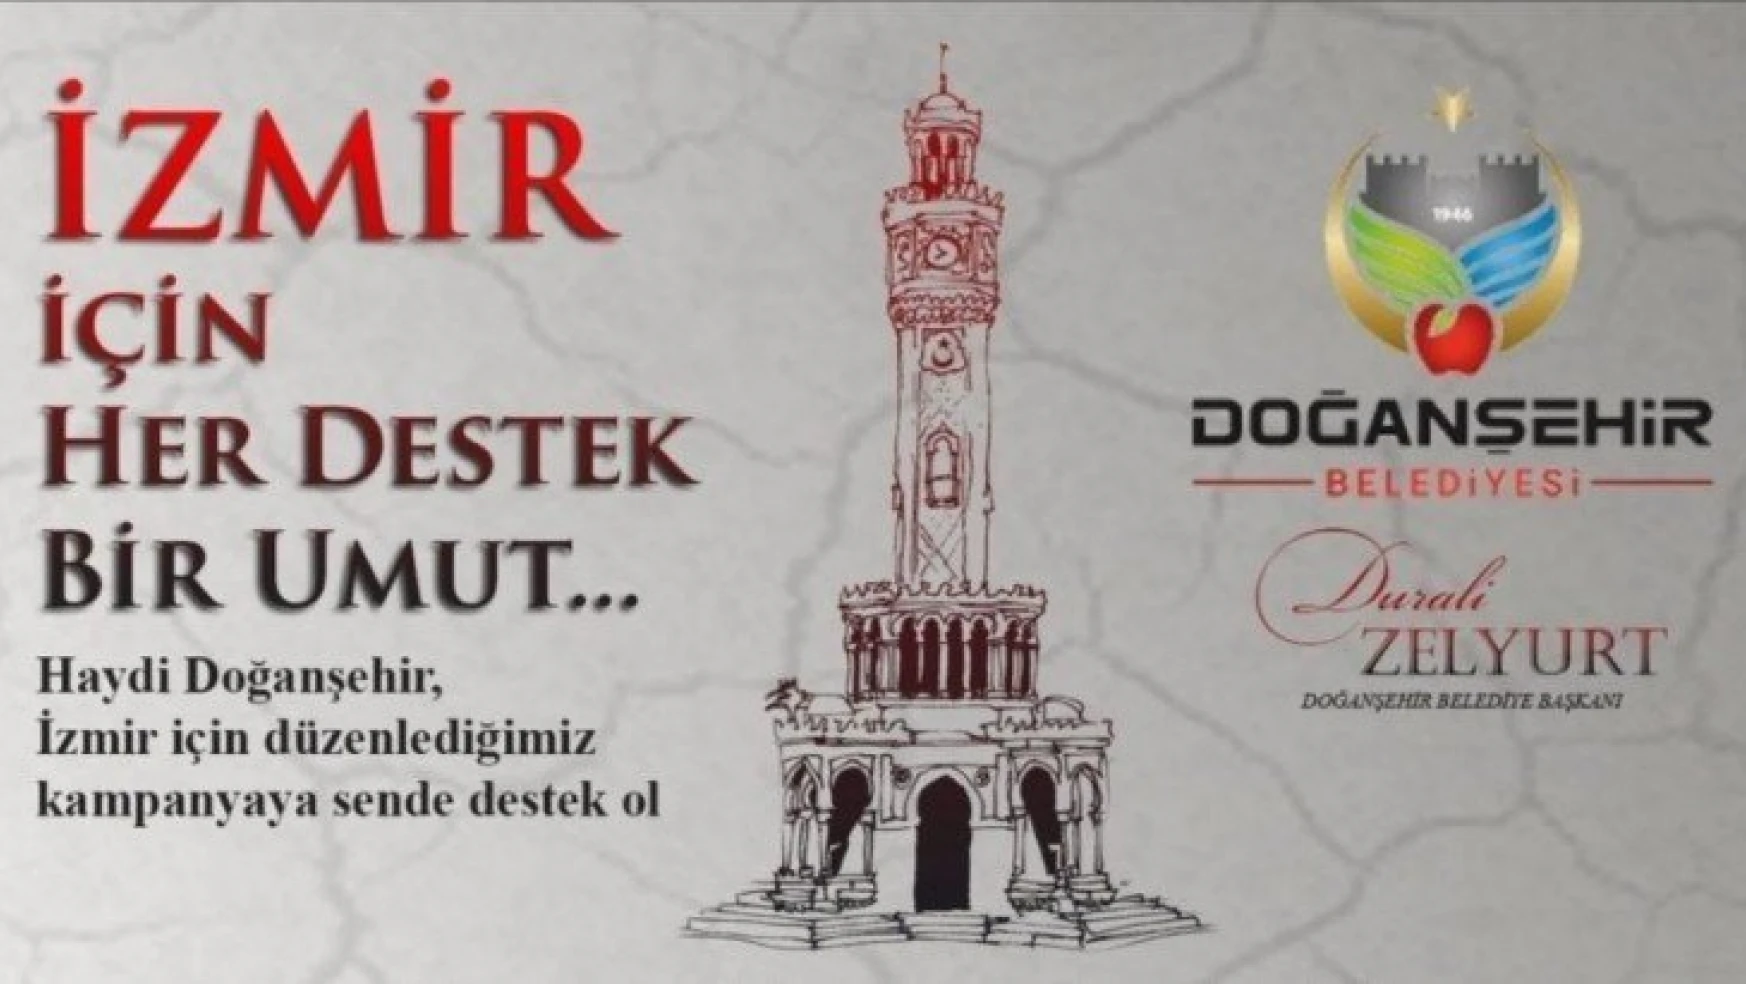 'İzmir İçin Her Destek Bir Umut' kampanyası